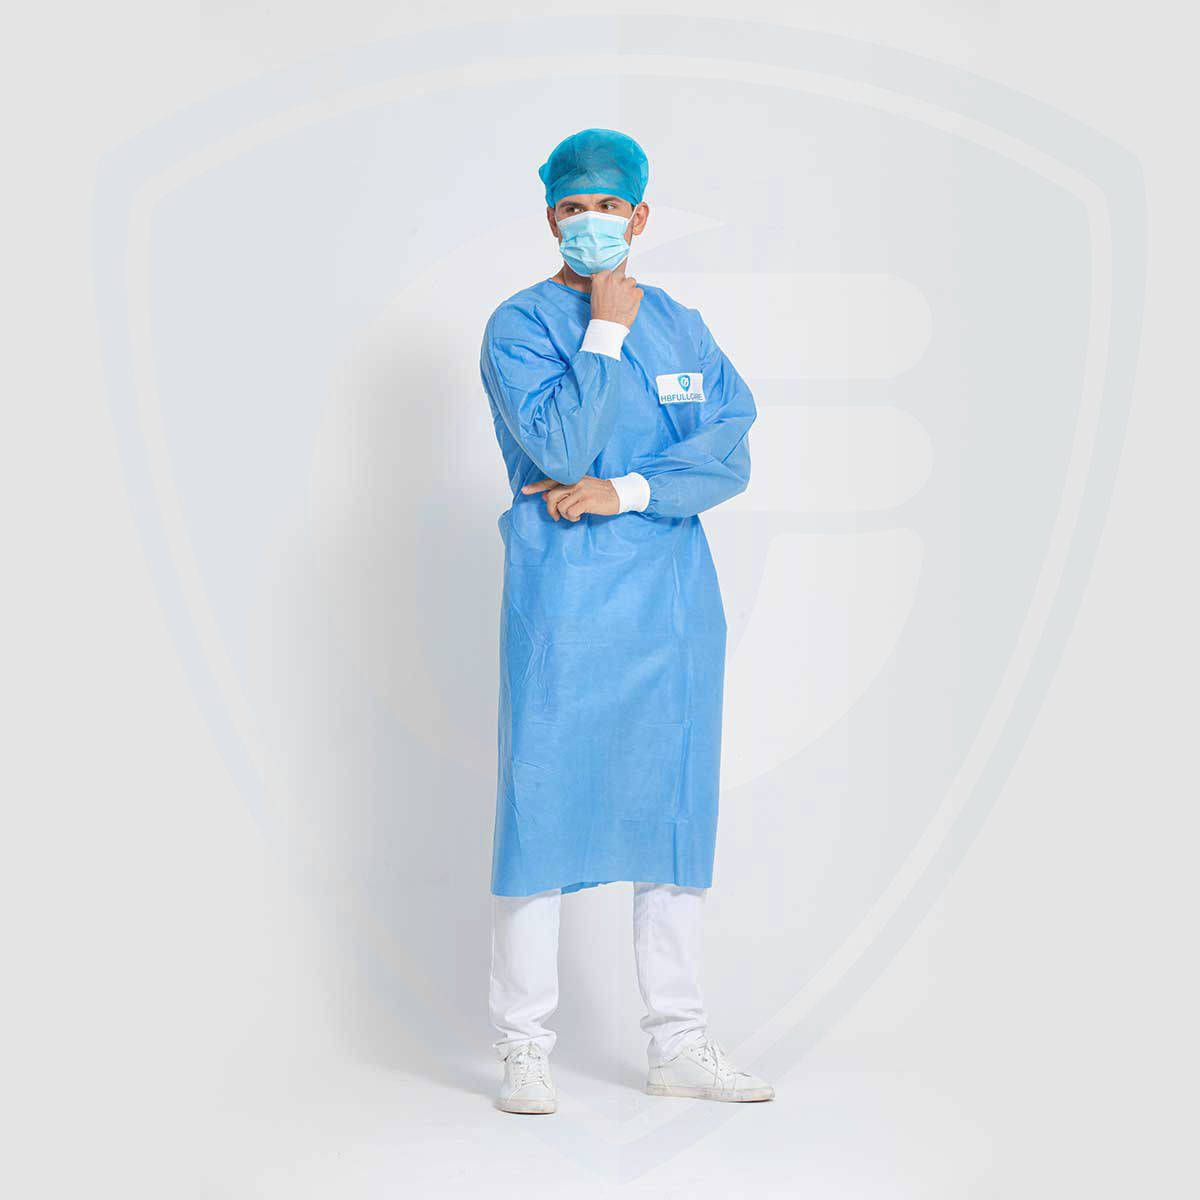 Bata quirúrgica desechable impermeable esterilizable en autoclave azul para hospitales/clínicas AAMI PB70 Level3